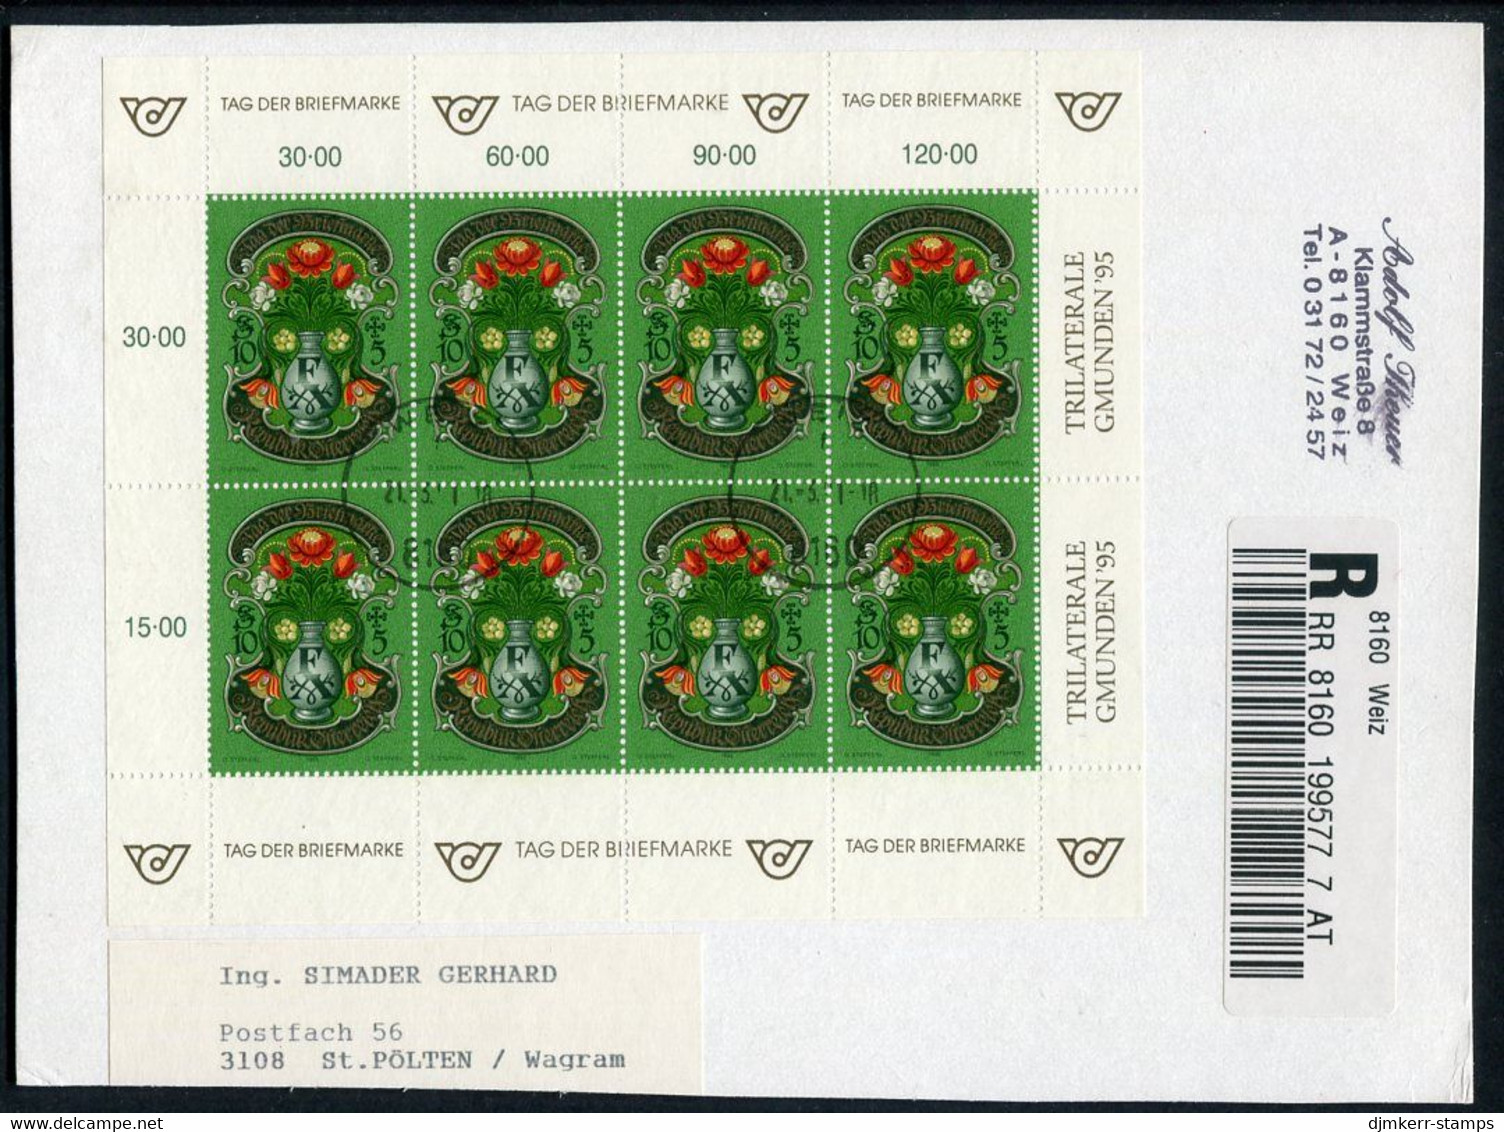 AUSTRIA 1995 Stamp Day Sheetlet, Postally Used On Registered Card.  Michel 2158 Kb - Blocks & Kleinbögen